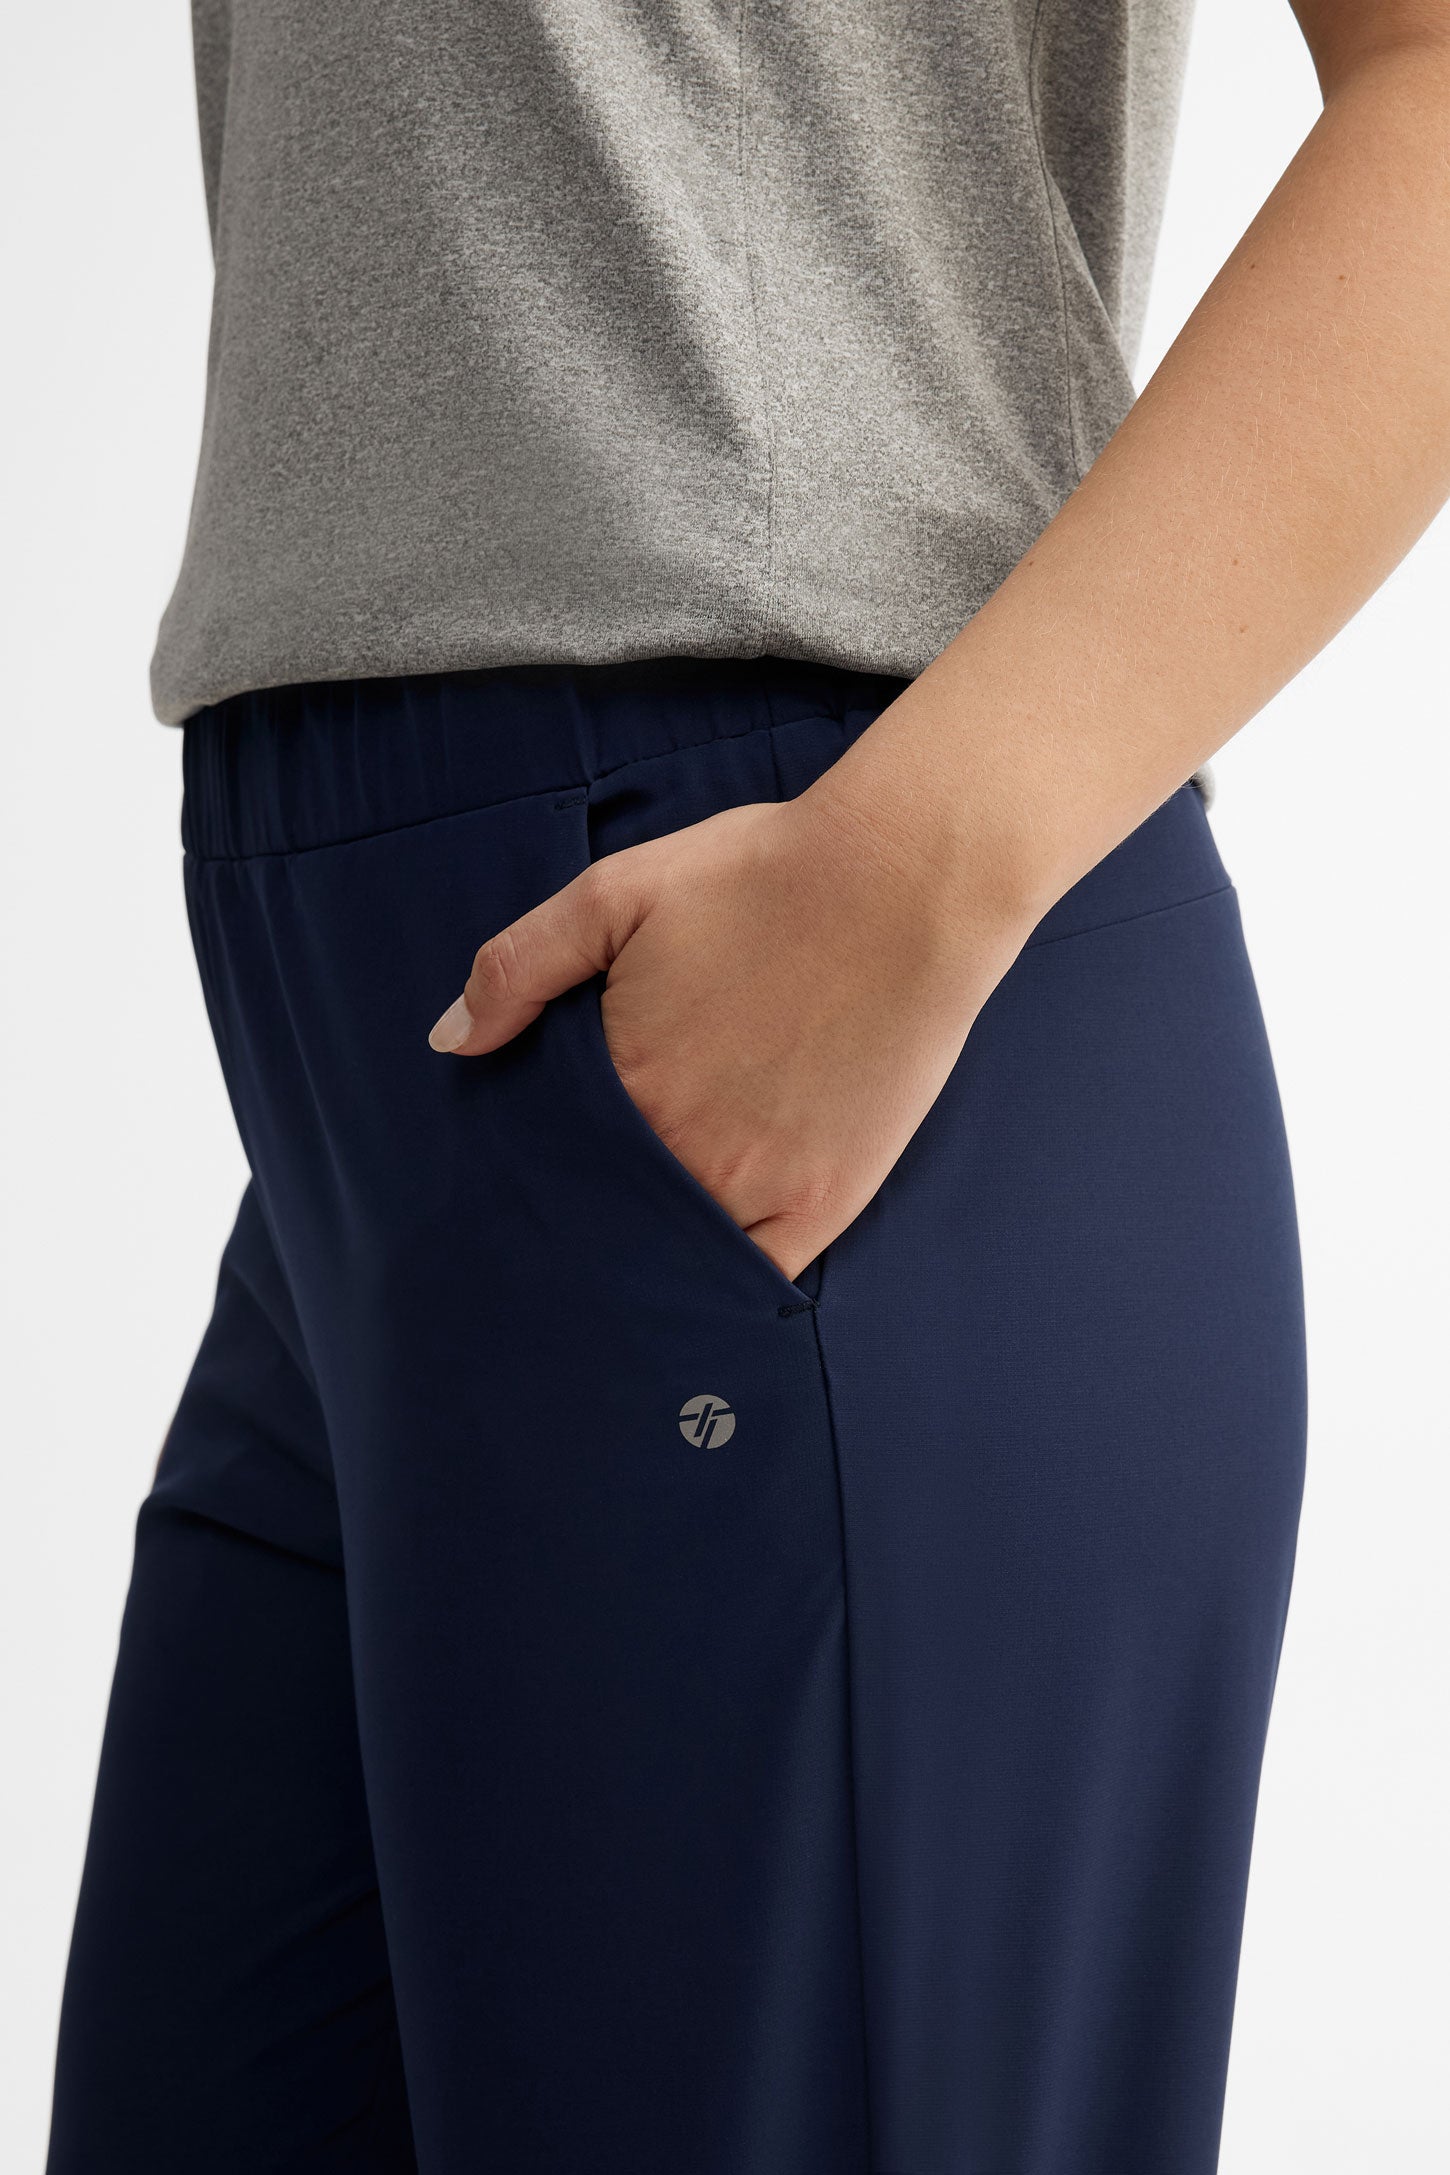 Pantalon athlétique taille élastique - Femme && BLEU MARINE